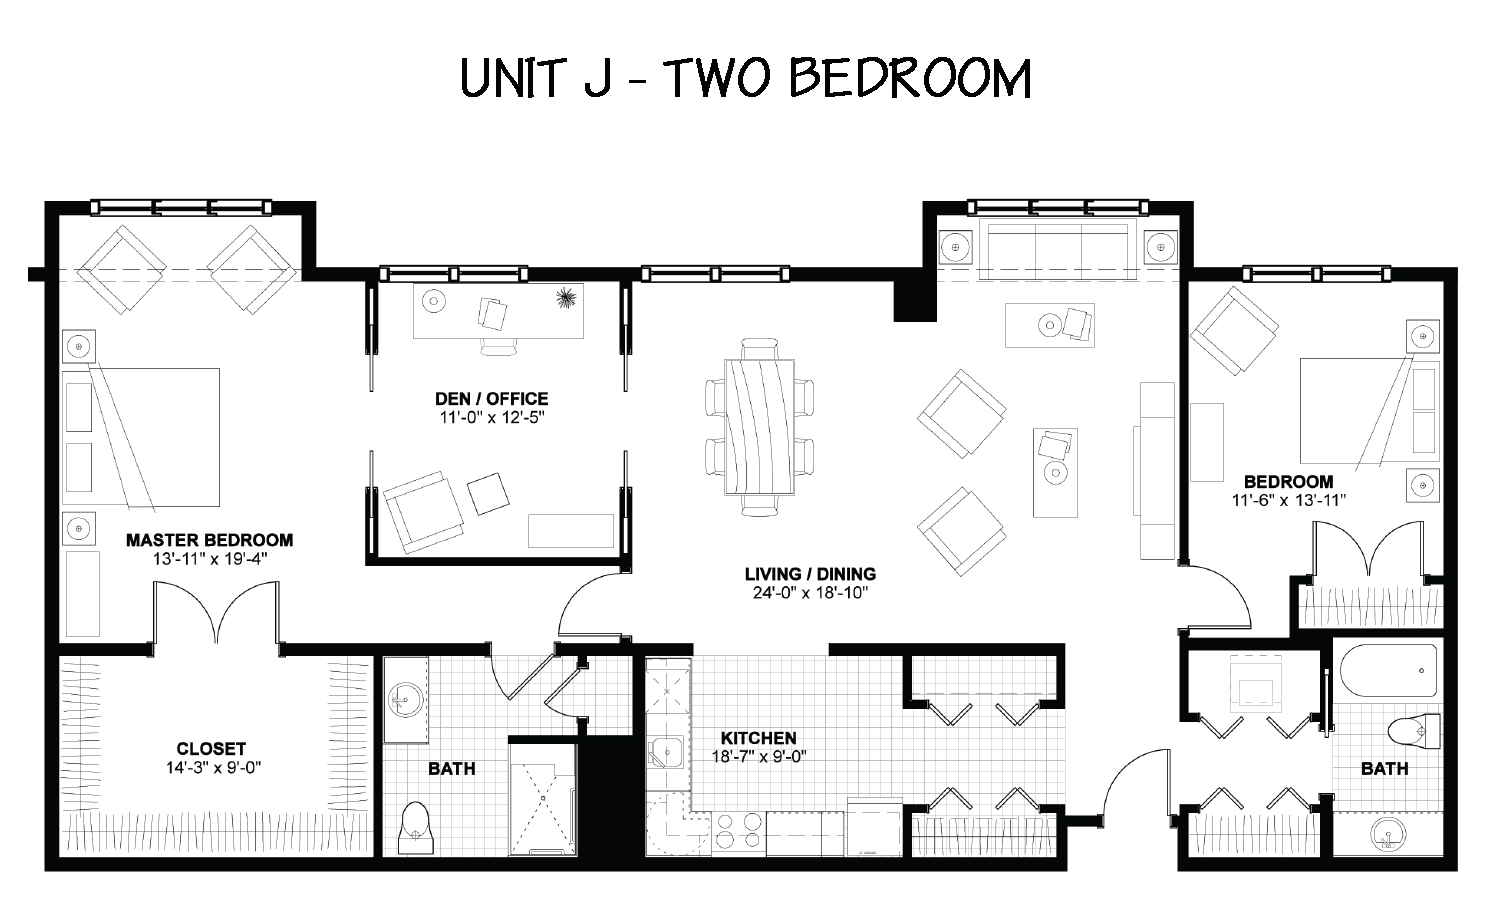 Floor Plan - The Woodlands - 2 Bedrooms - Unit J